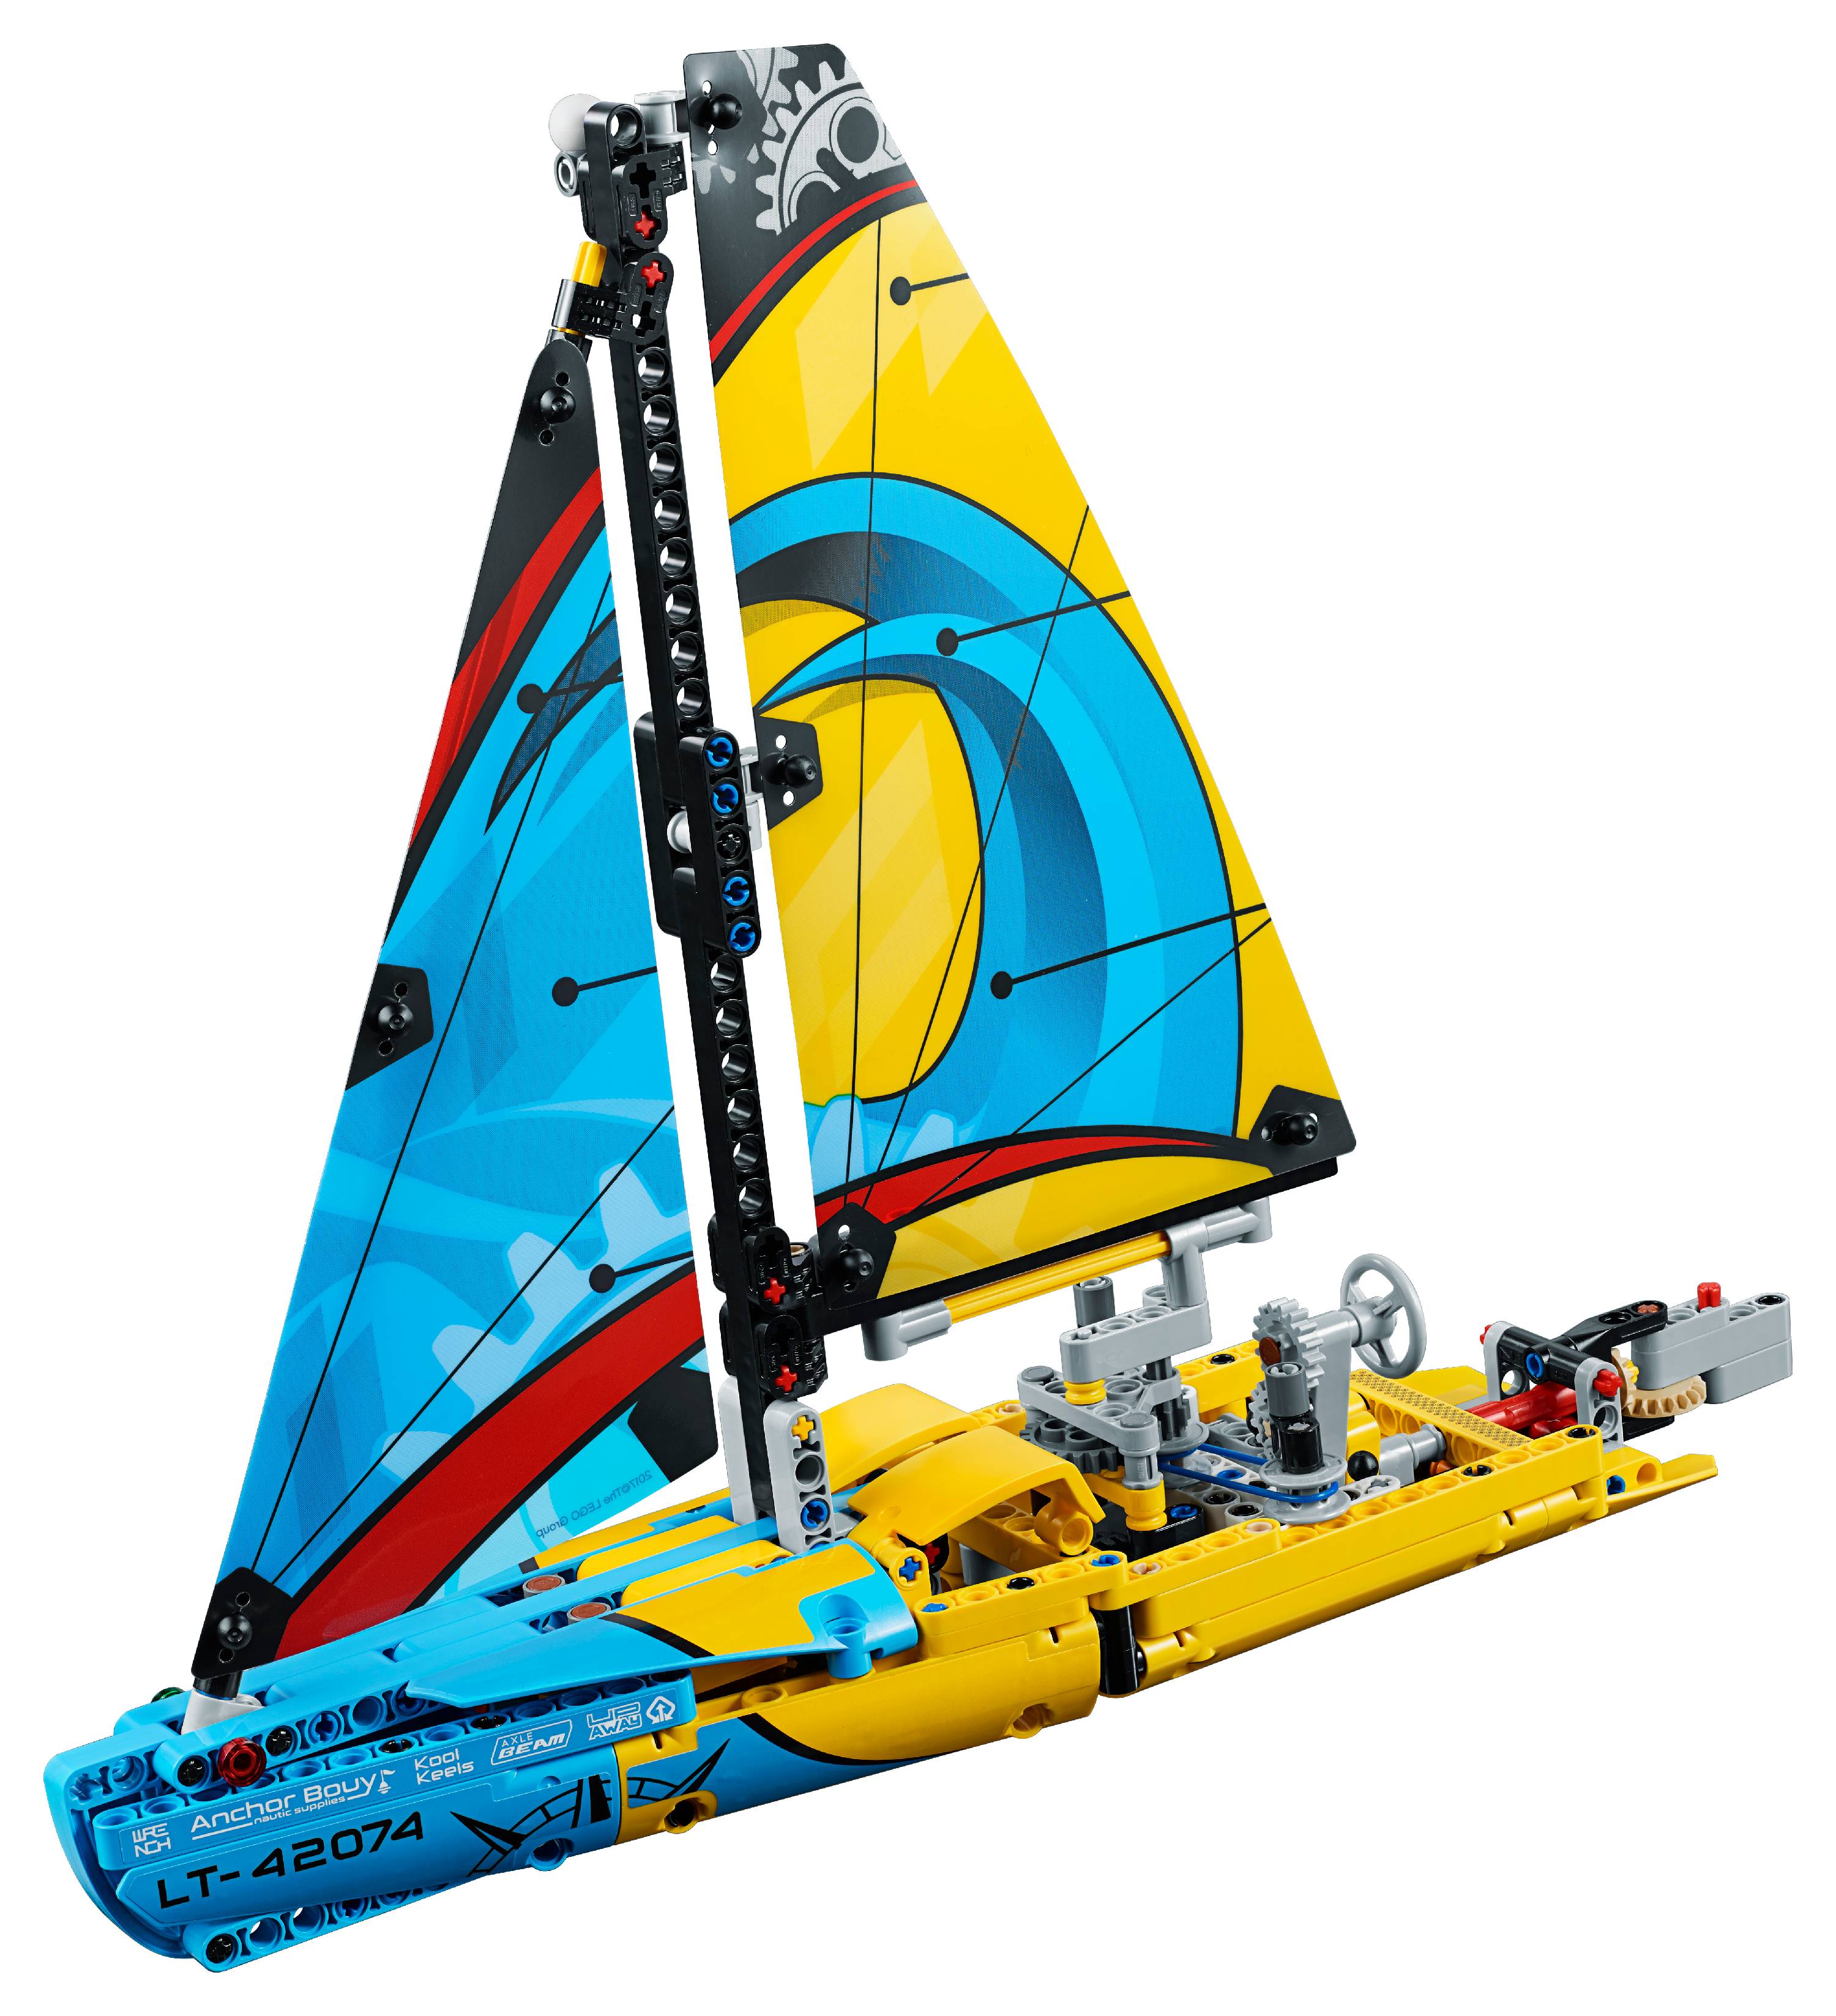 LEGO Technic Racing Yacht 42074 - image 2 of 7